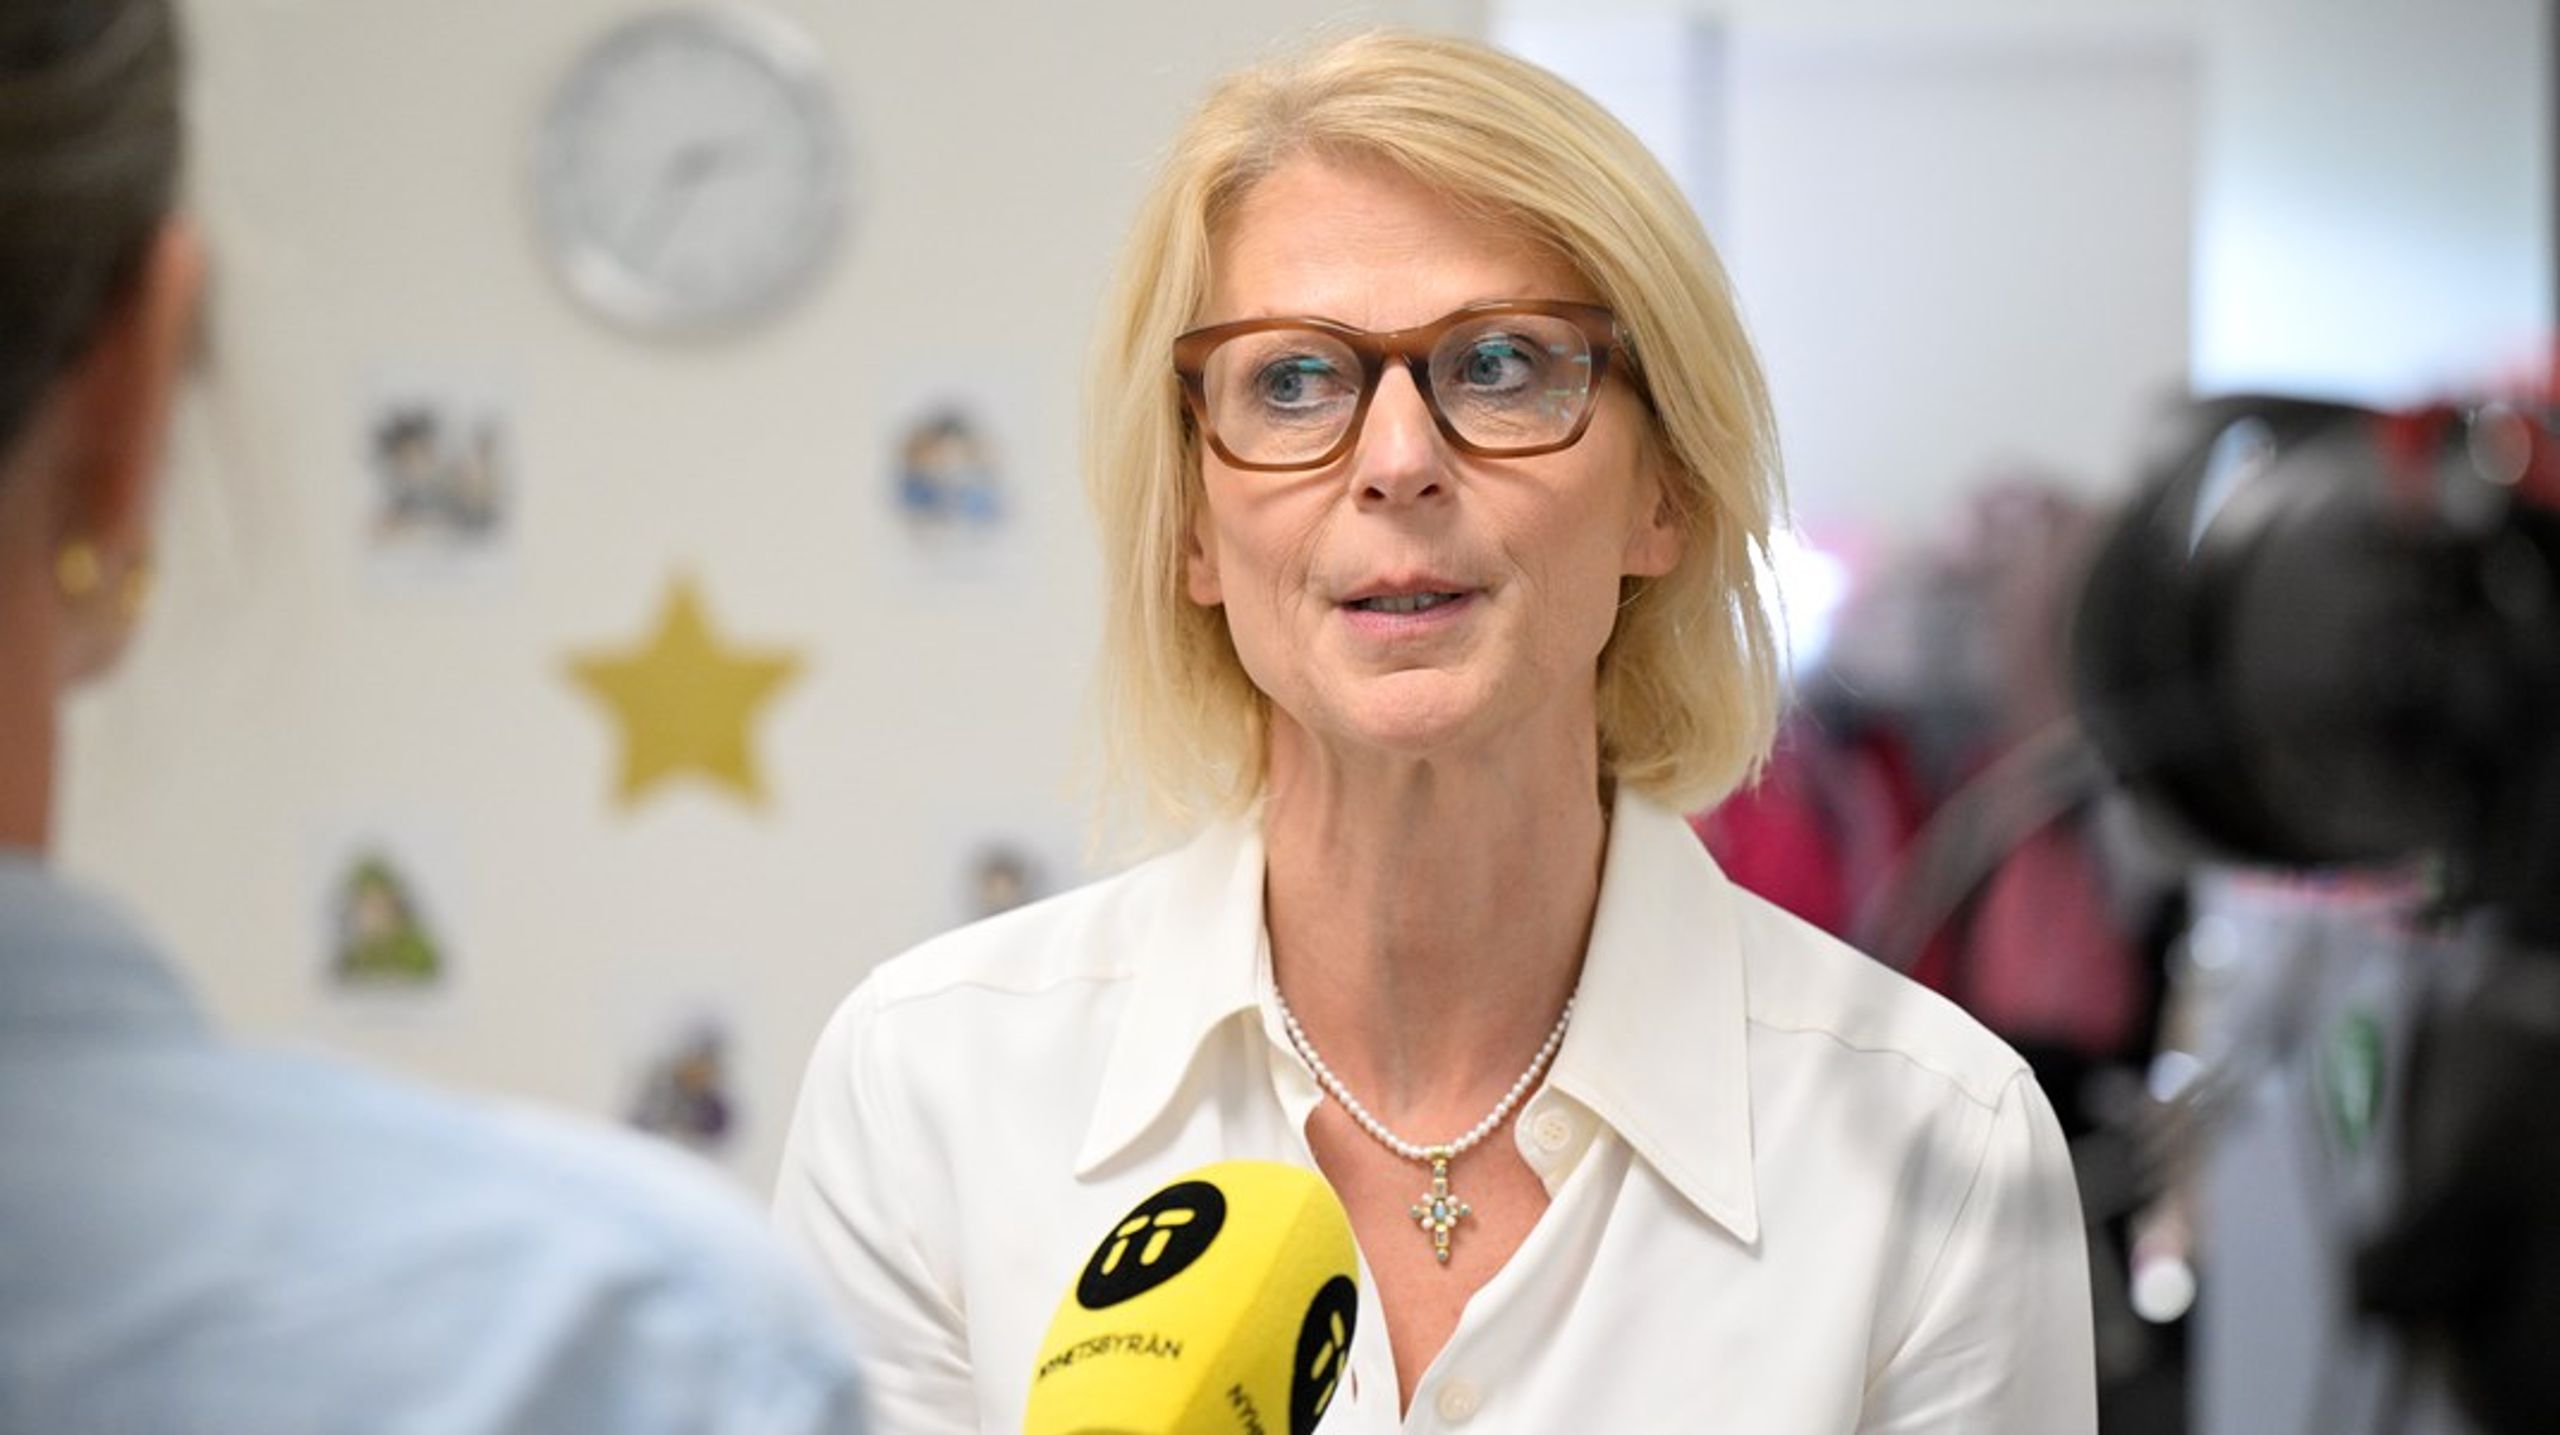 Elisabeth Svantesson (M) vill sänka skatten på bensin och diesel. Ej träffsäkert nog, enligt oppositionen. En bränslebluff, anser Socialdemokraterna.